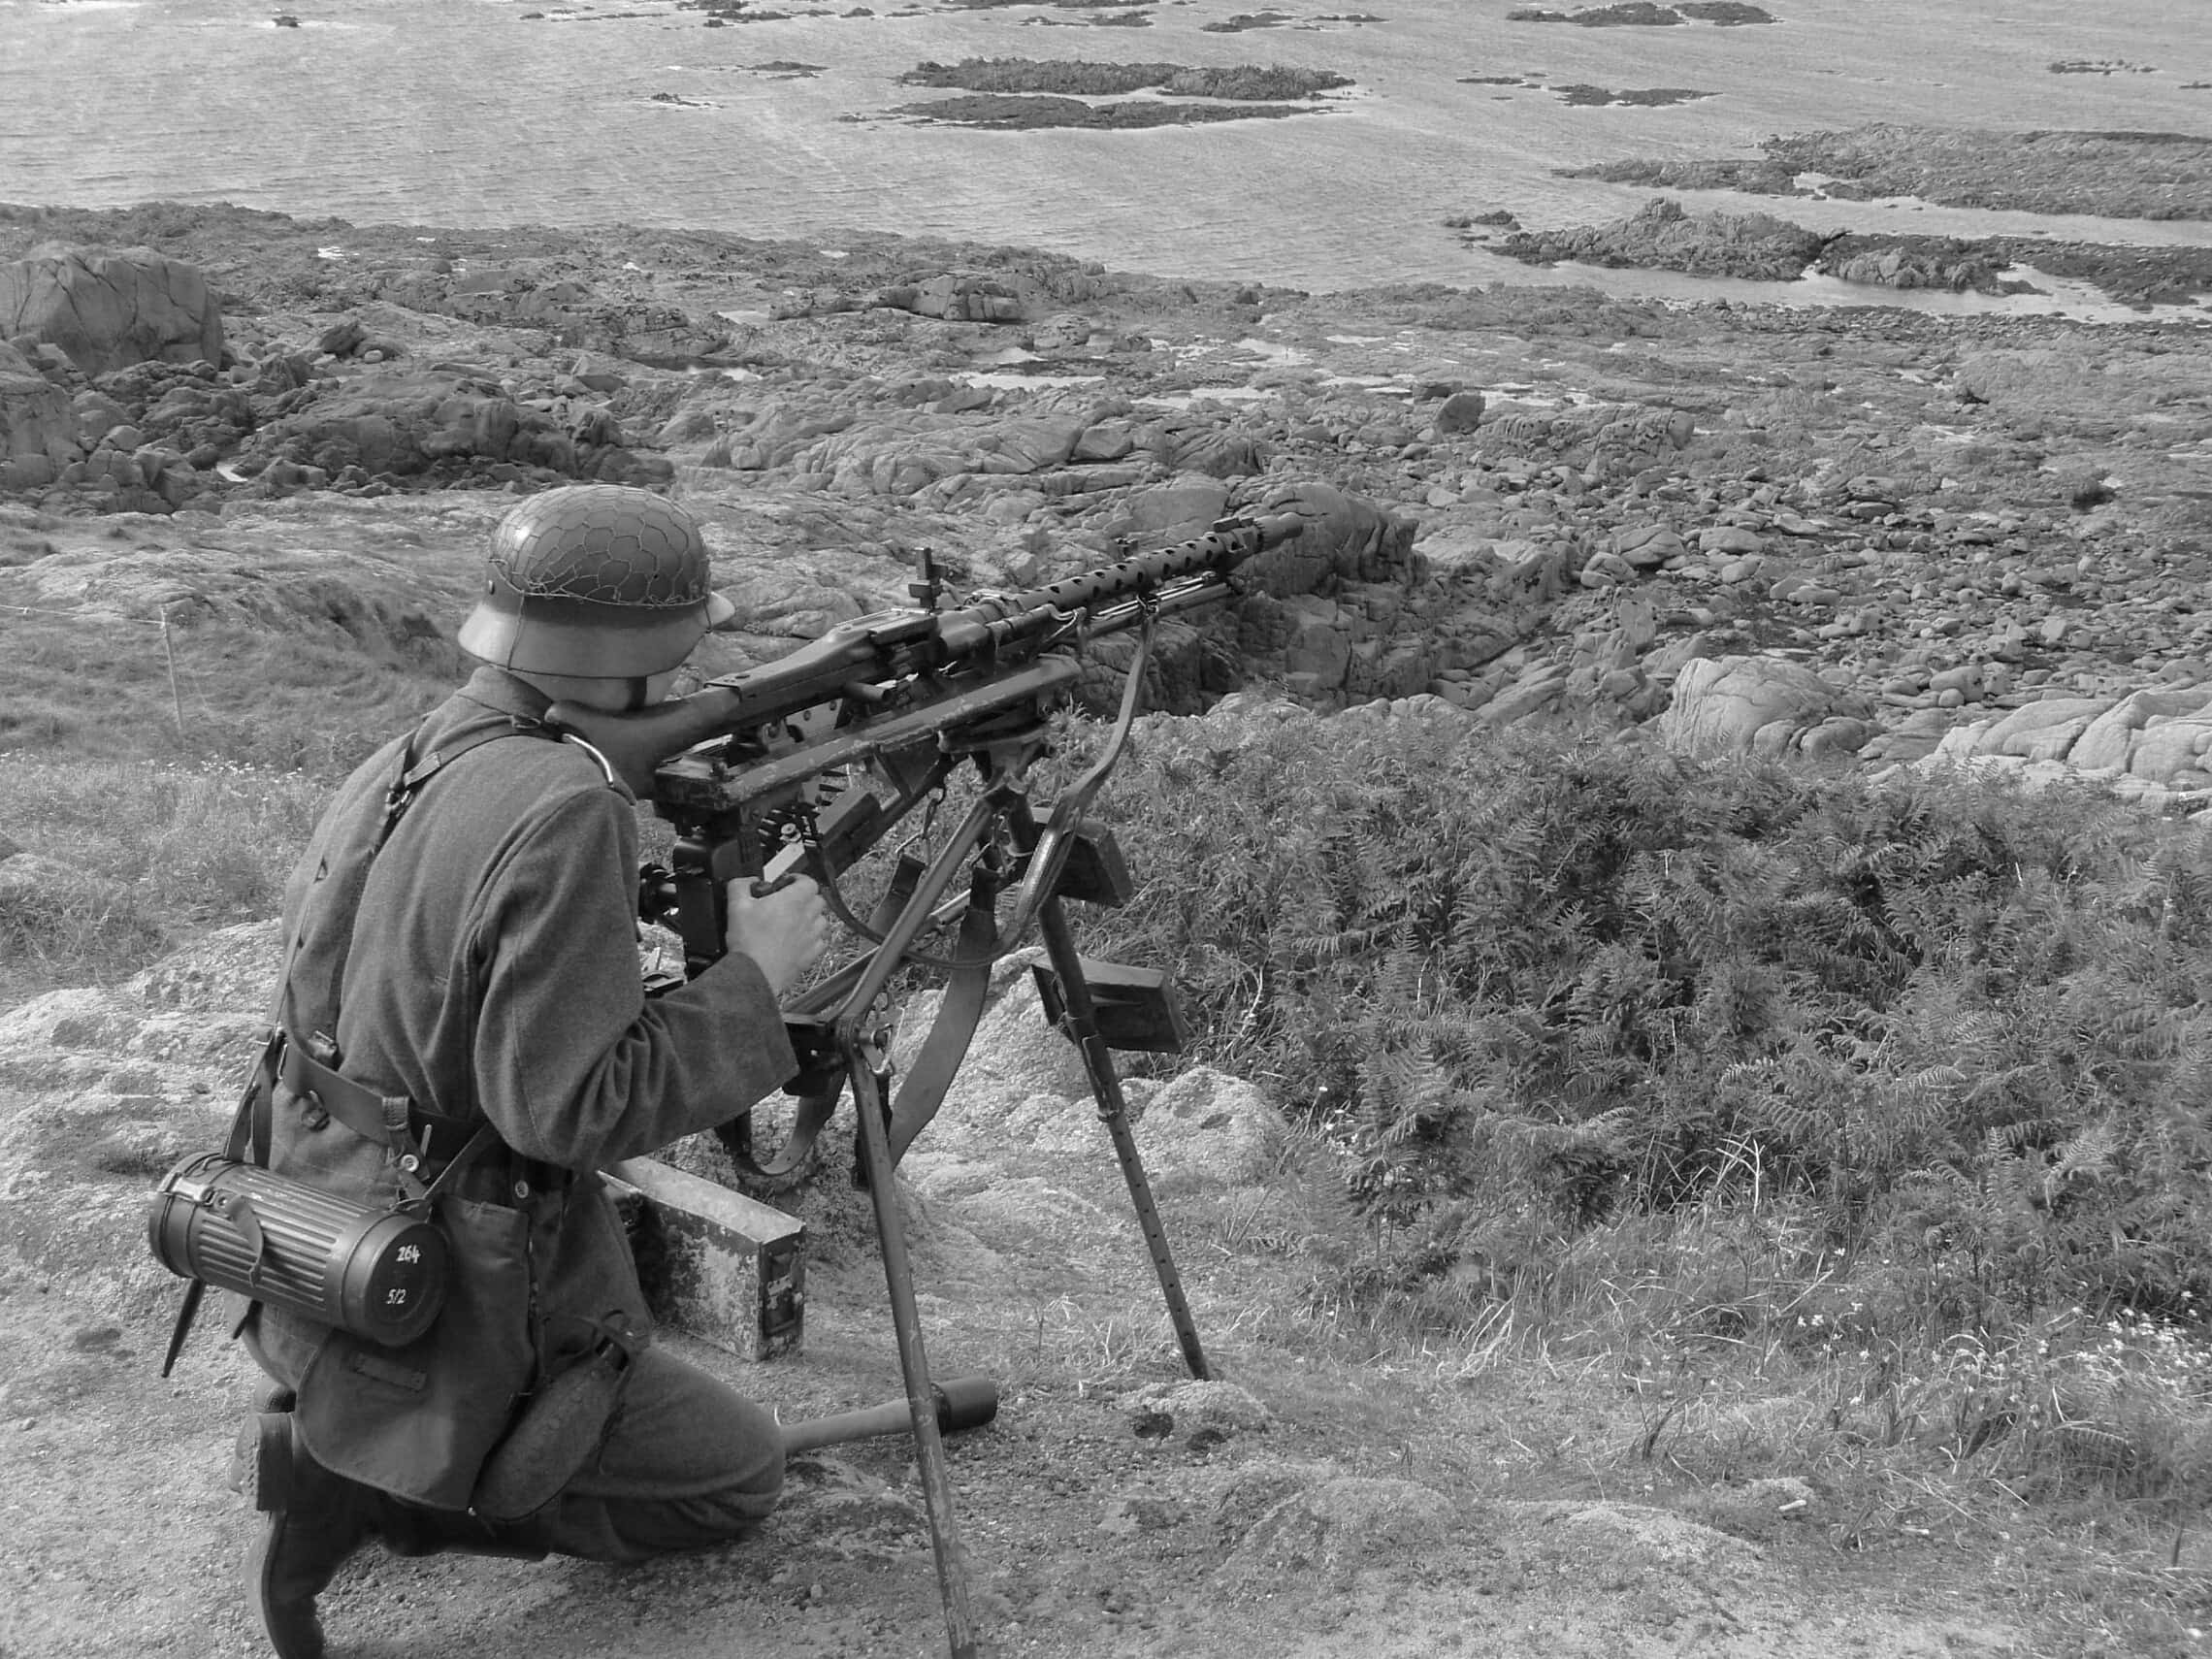 אילוסטרציה: חייל גרמני שומר על החומה האטלנטית באיי התעלה בתקופת מלחמת העולם השנייה